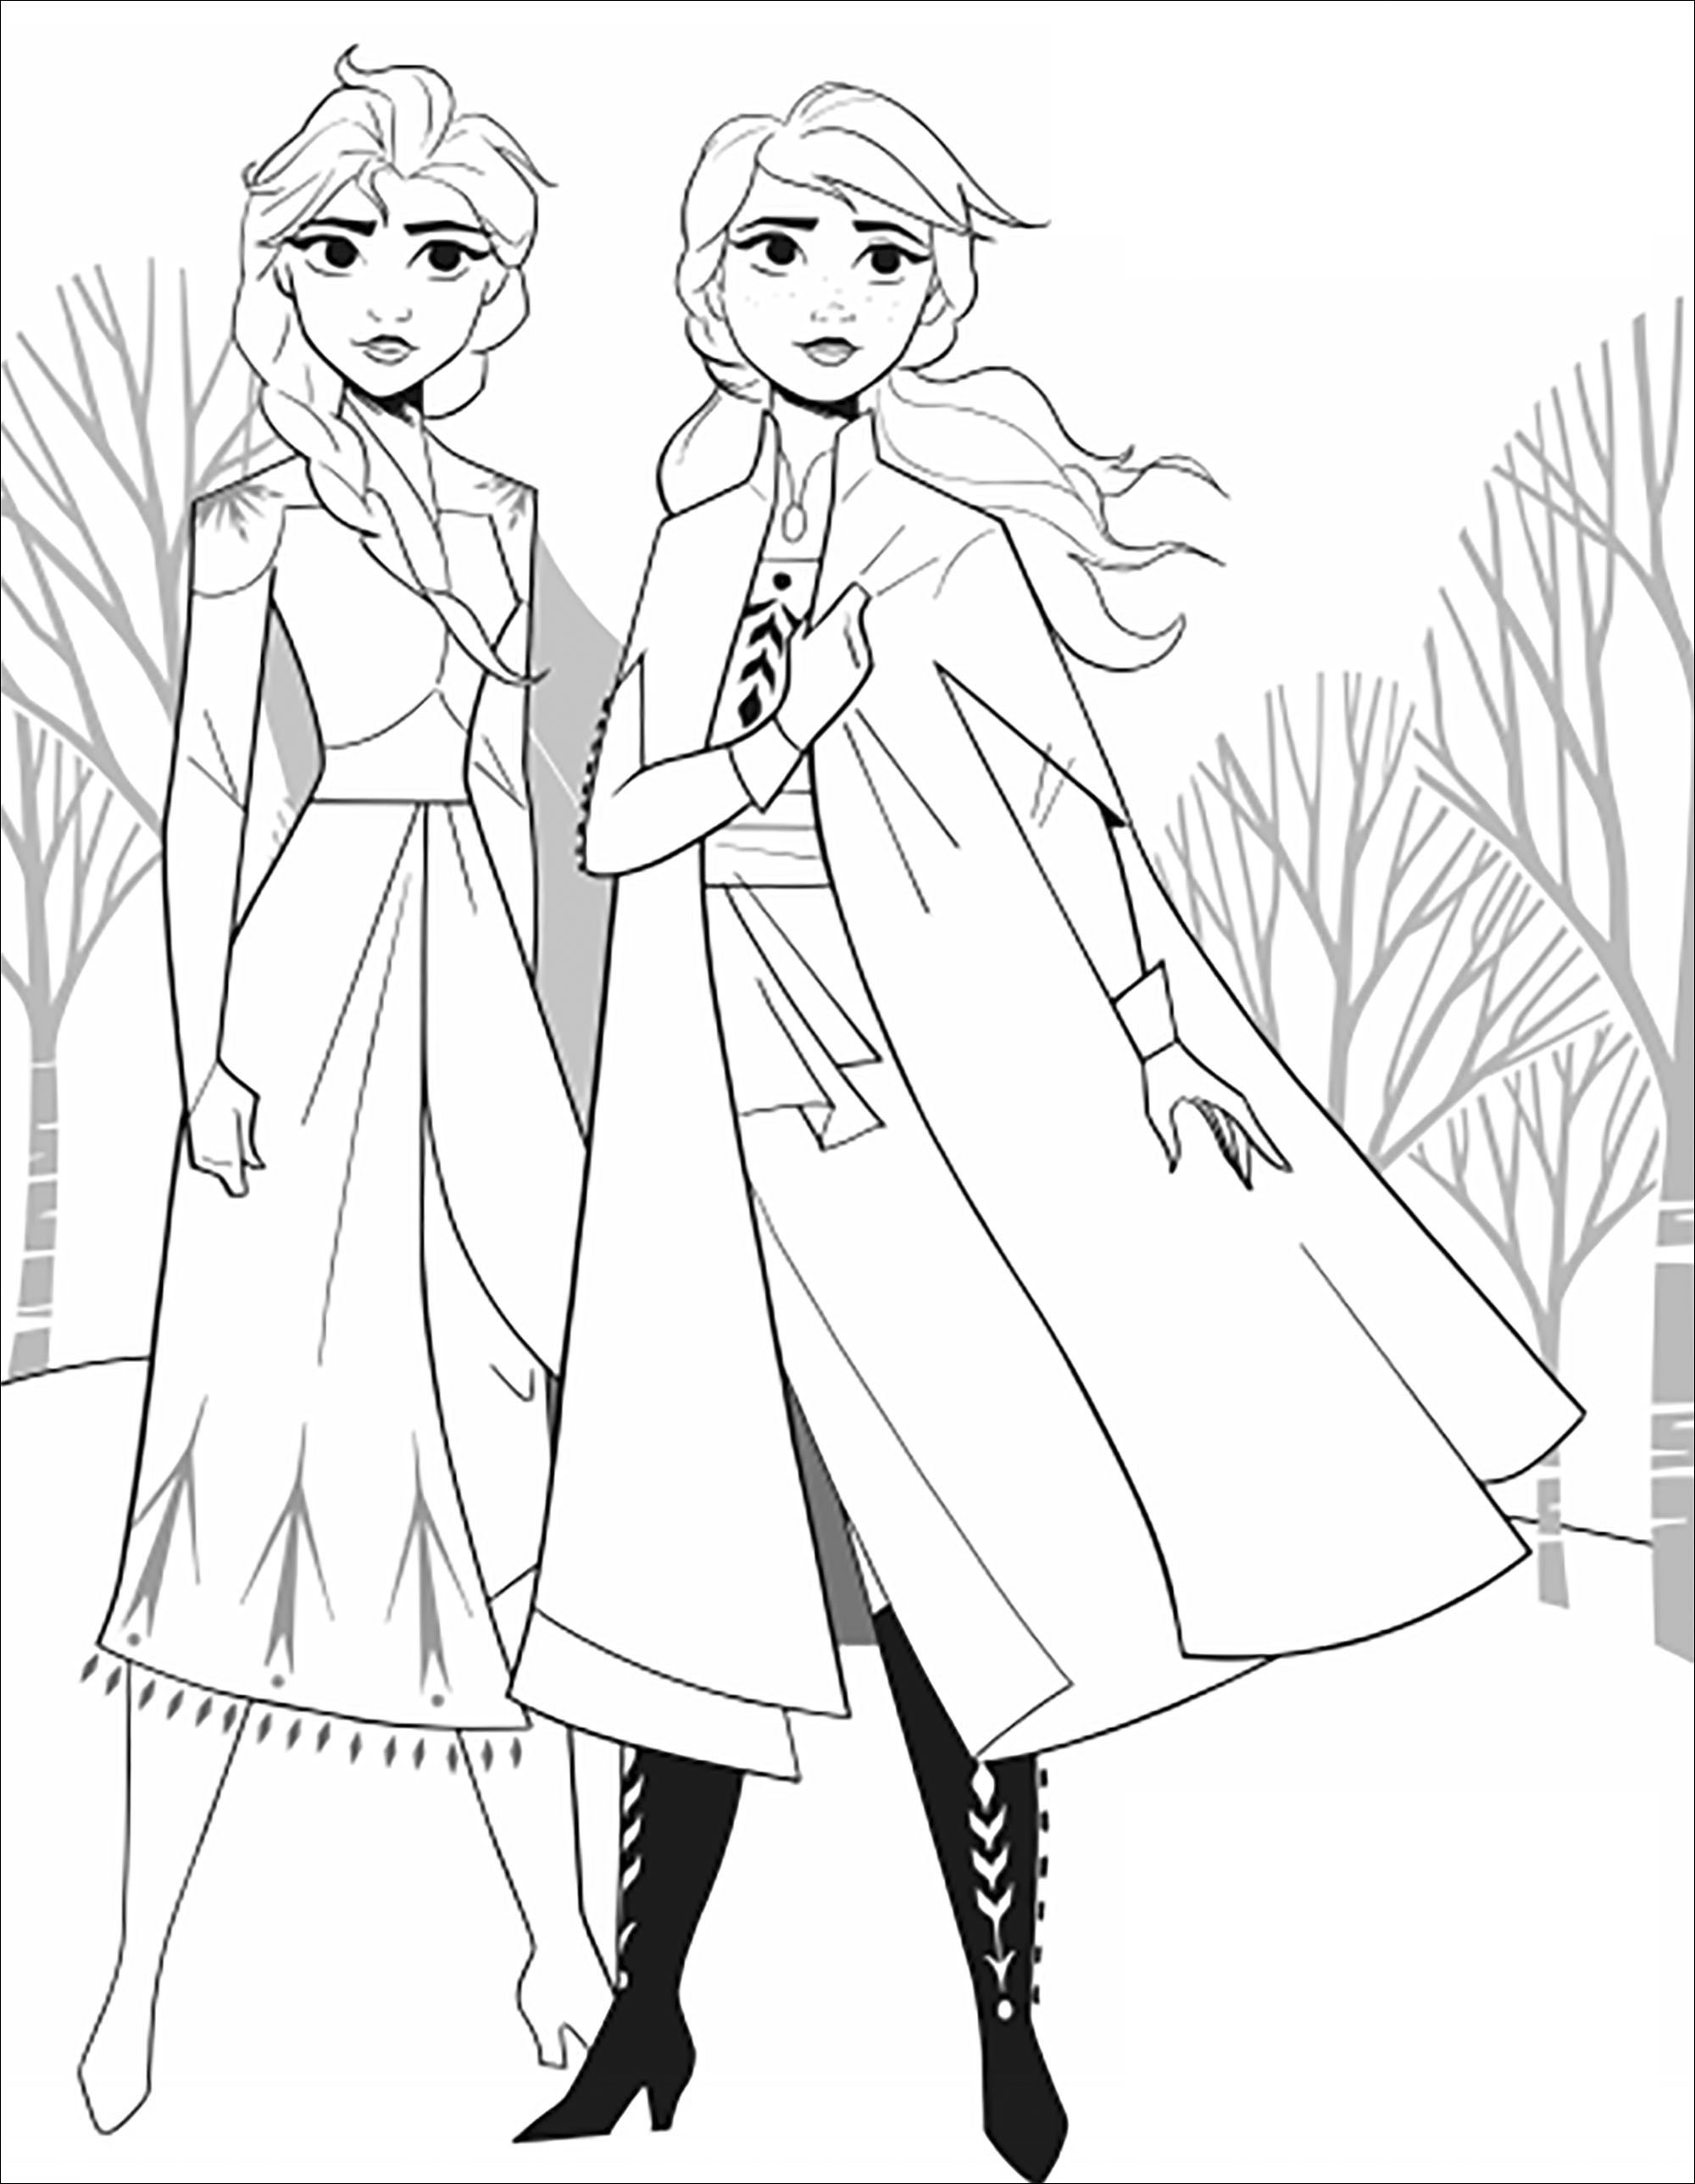 Retrouvez les deux soeurs de La reine des neiges 2 (Disney) : Elsa et Anna (version sans texte)